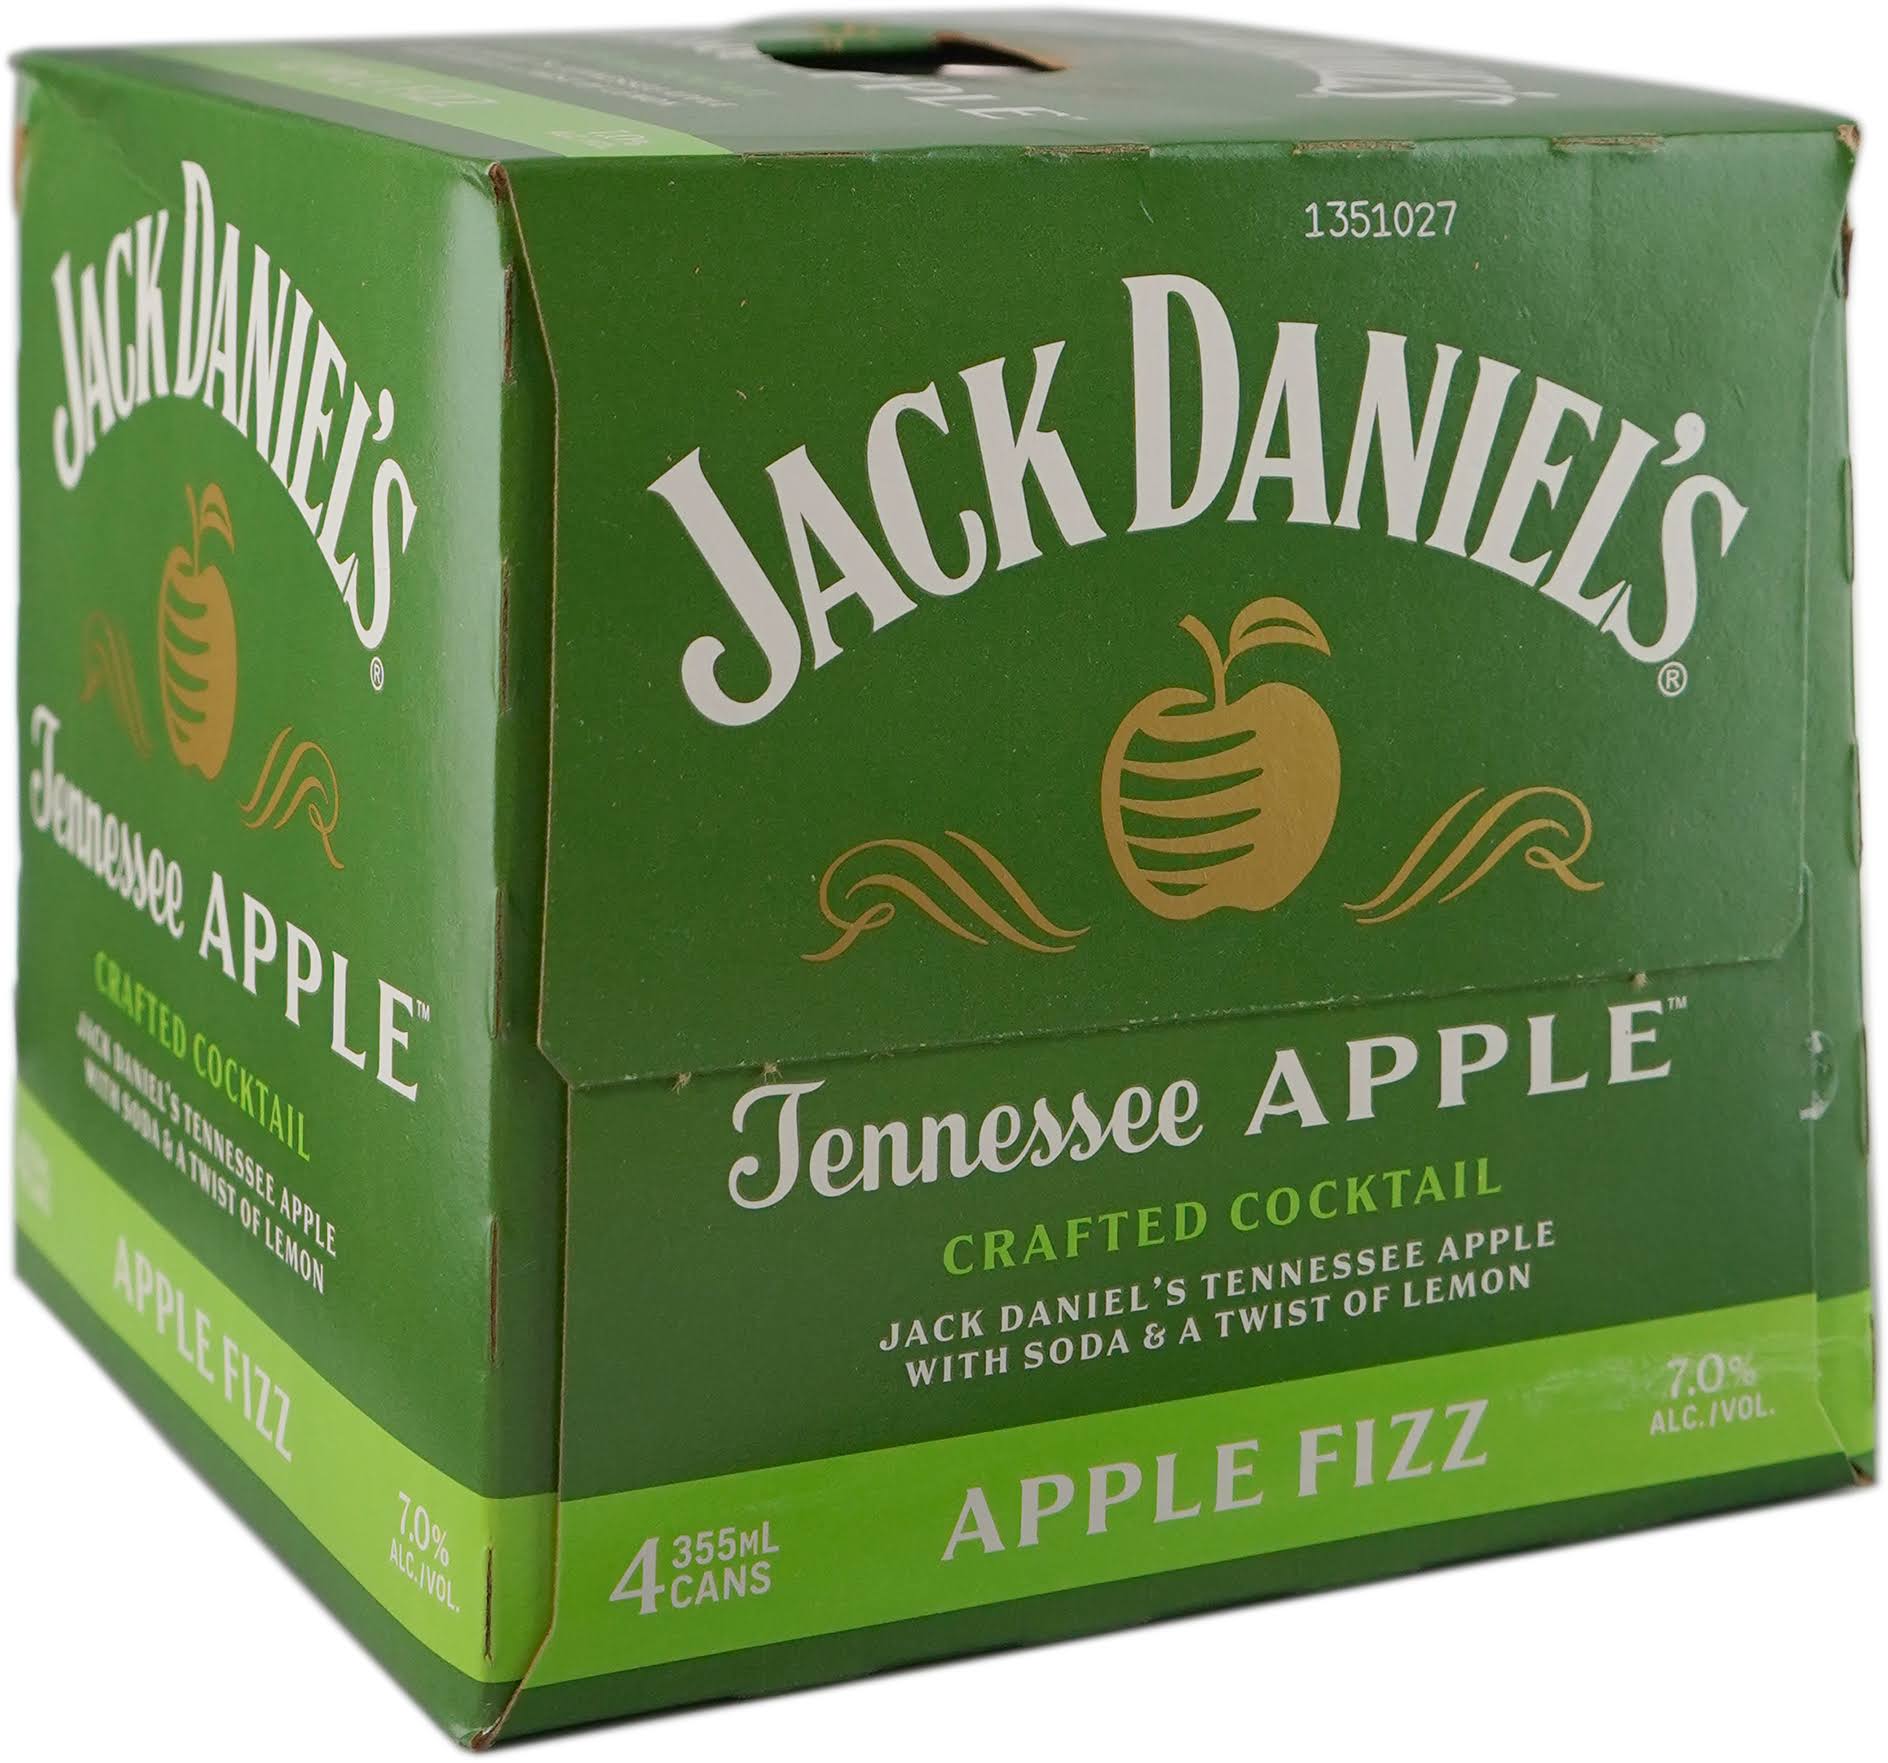 Jack Daniel's Tennessee Apple Apple Fizz